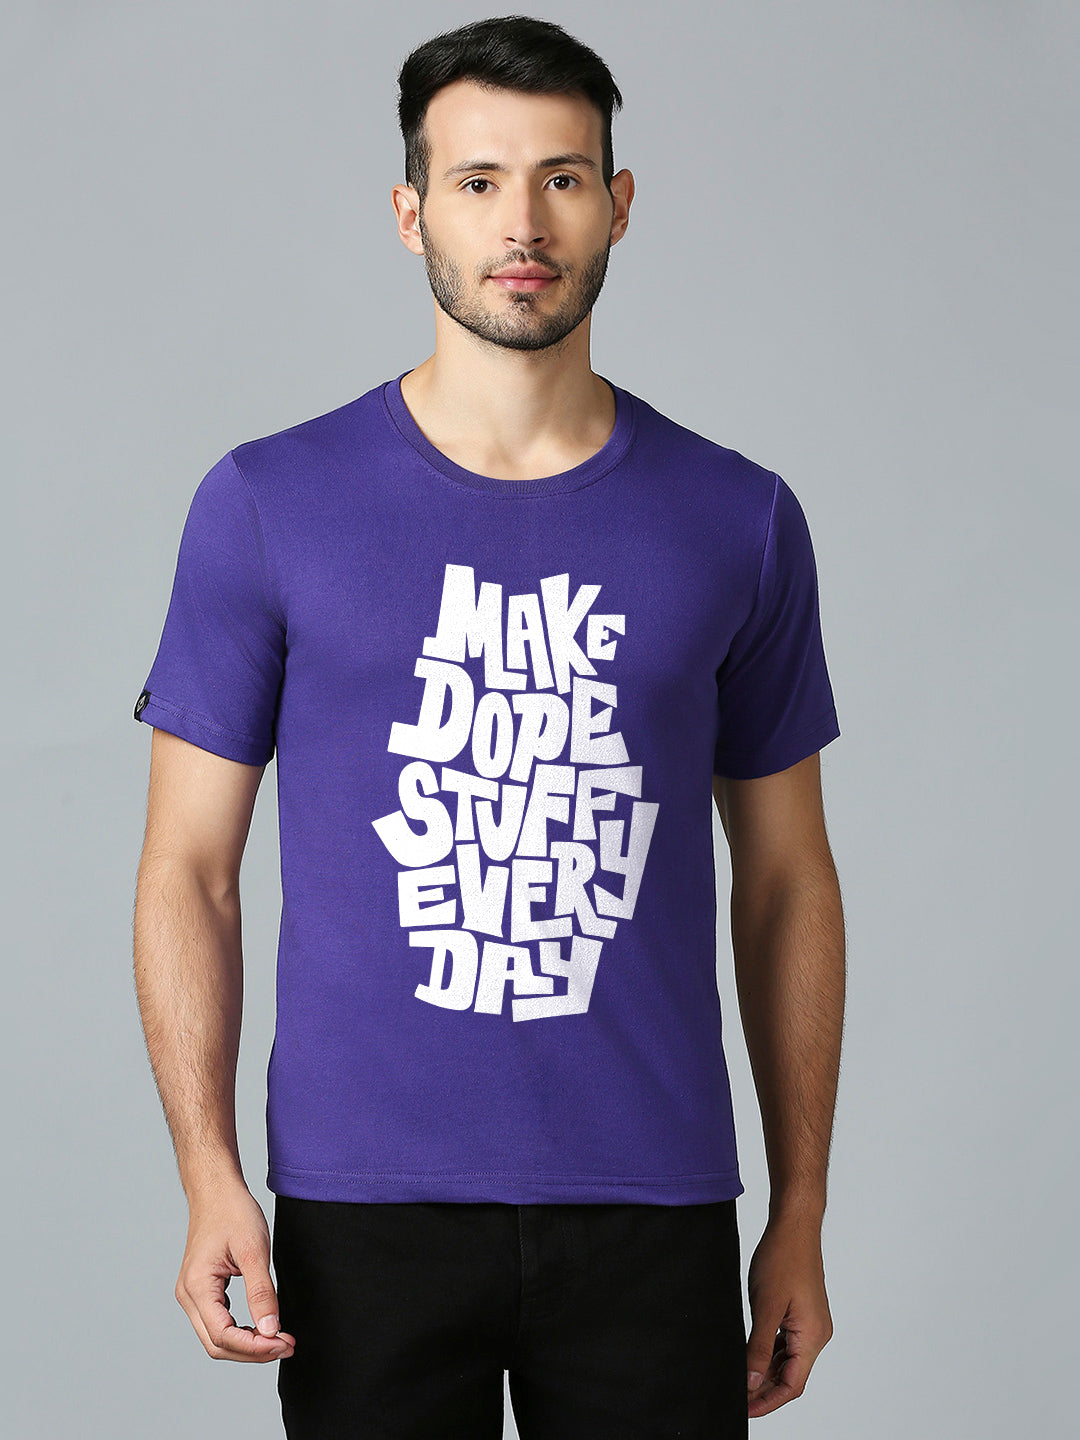 Make Dope Stuff Every Day T-Shirt